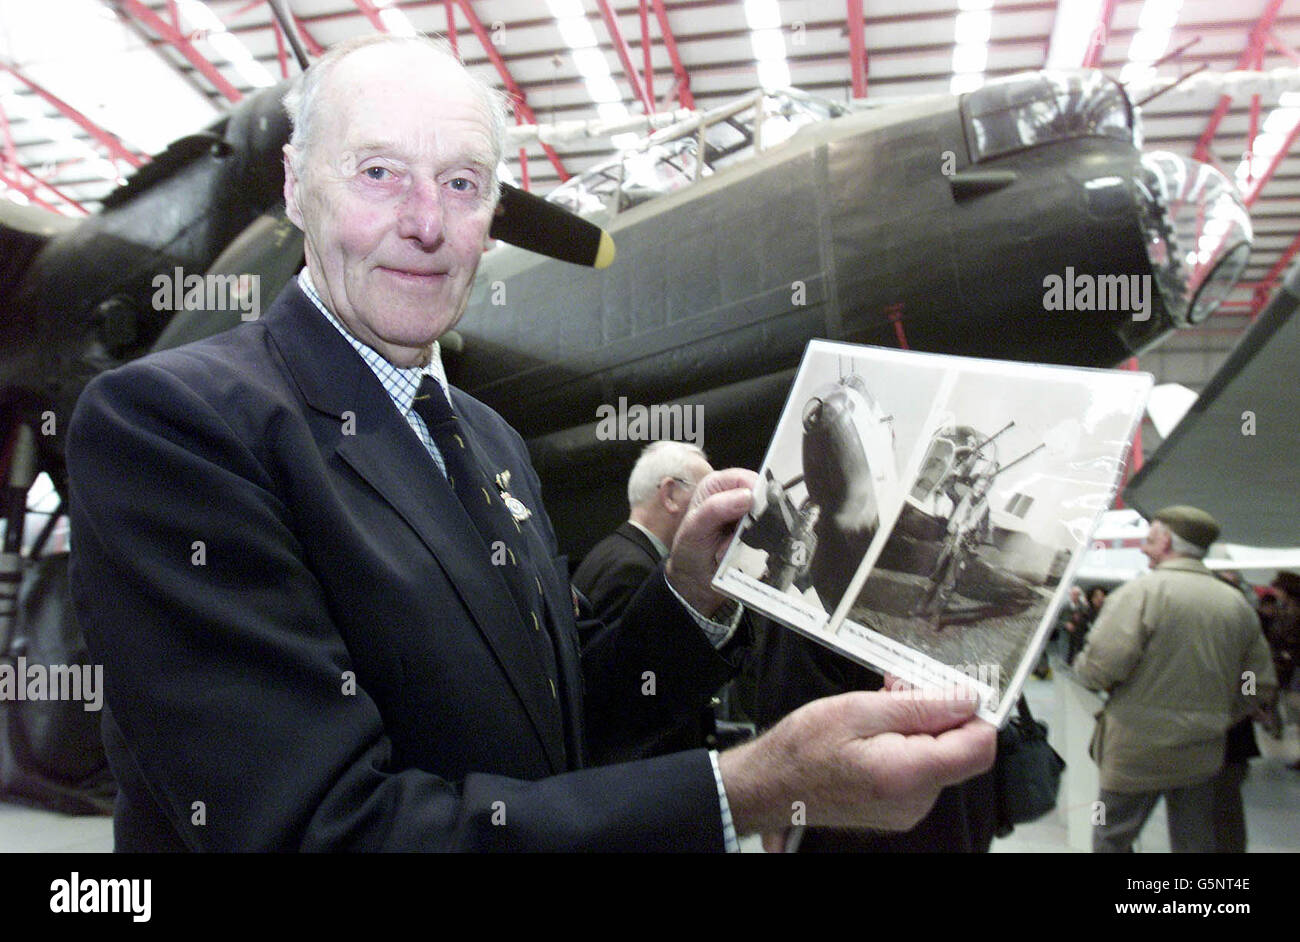 Jim McGillivray, Sgt. De vol à l'escadron 115, avec des photos de lui-même devant un Lancaster pendant la guerre, pendant les célébrations marquant le 60e anniversaire des missions de l'avion pendant la Seconde Guerre mondiale, au Duxford Air Museum, Cambridgeshire. * les anciens combattants de la RAF ont critiqué l'échec du ministère de la Défense à reconnaître les réalisations du Commandement de l'bombardier, estimant que des médailles de campagne auraient dû être attribuées aux équipages malgré la controverse causée par le nombre de civils tués lors des raids de bombardement sur l'Allemagne, Qui sont considérés comme une contribution vitale à la victoire des alliés. Banque D'Images